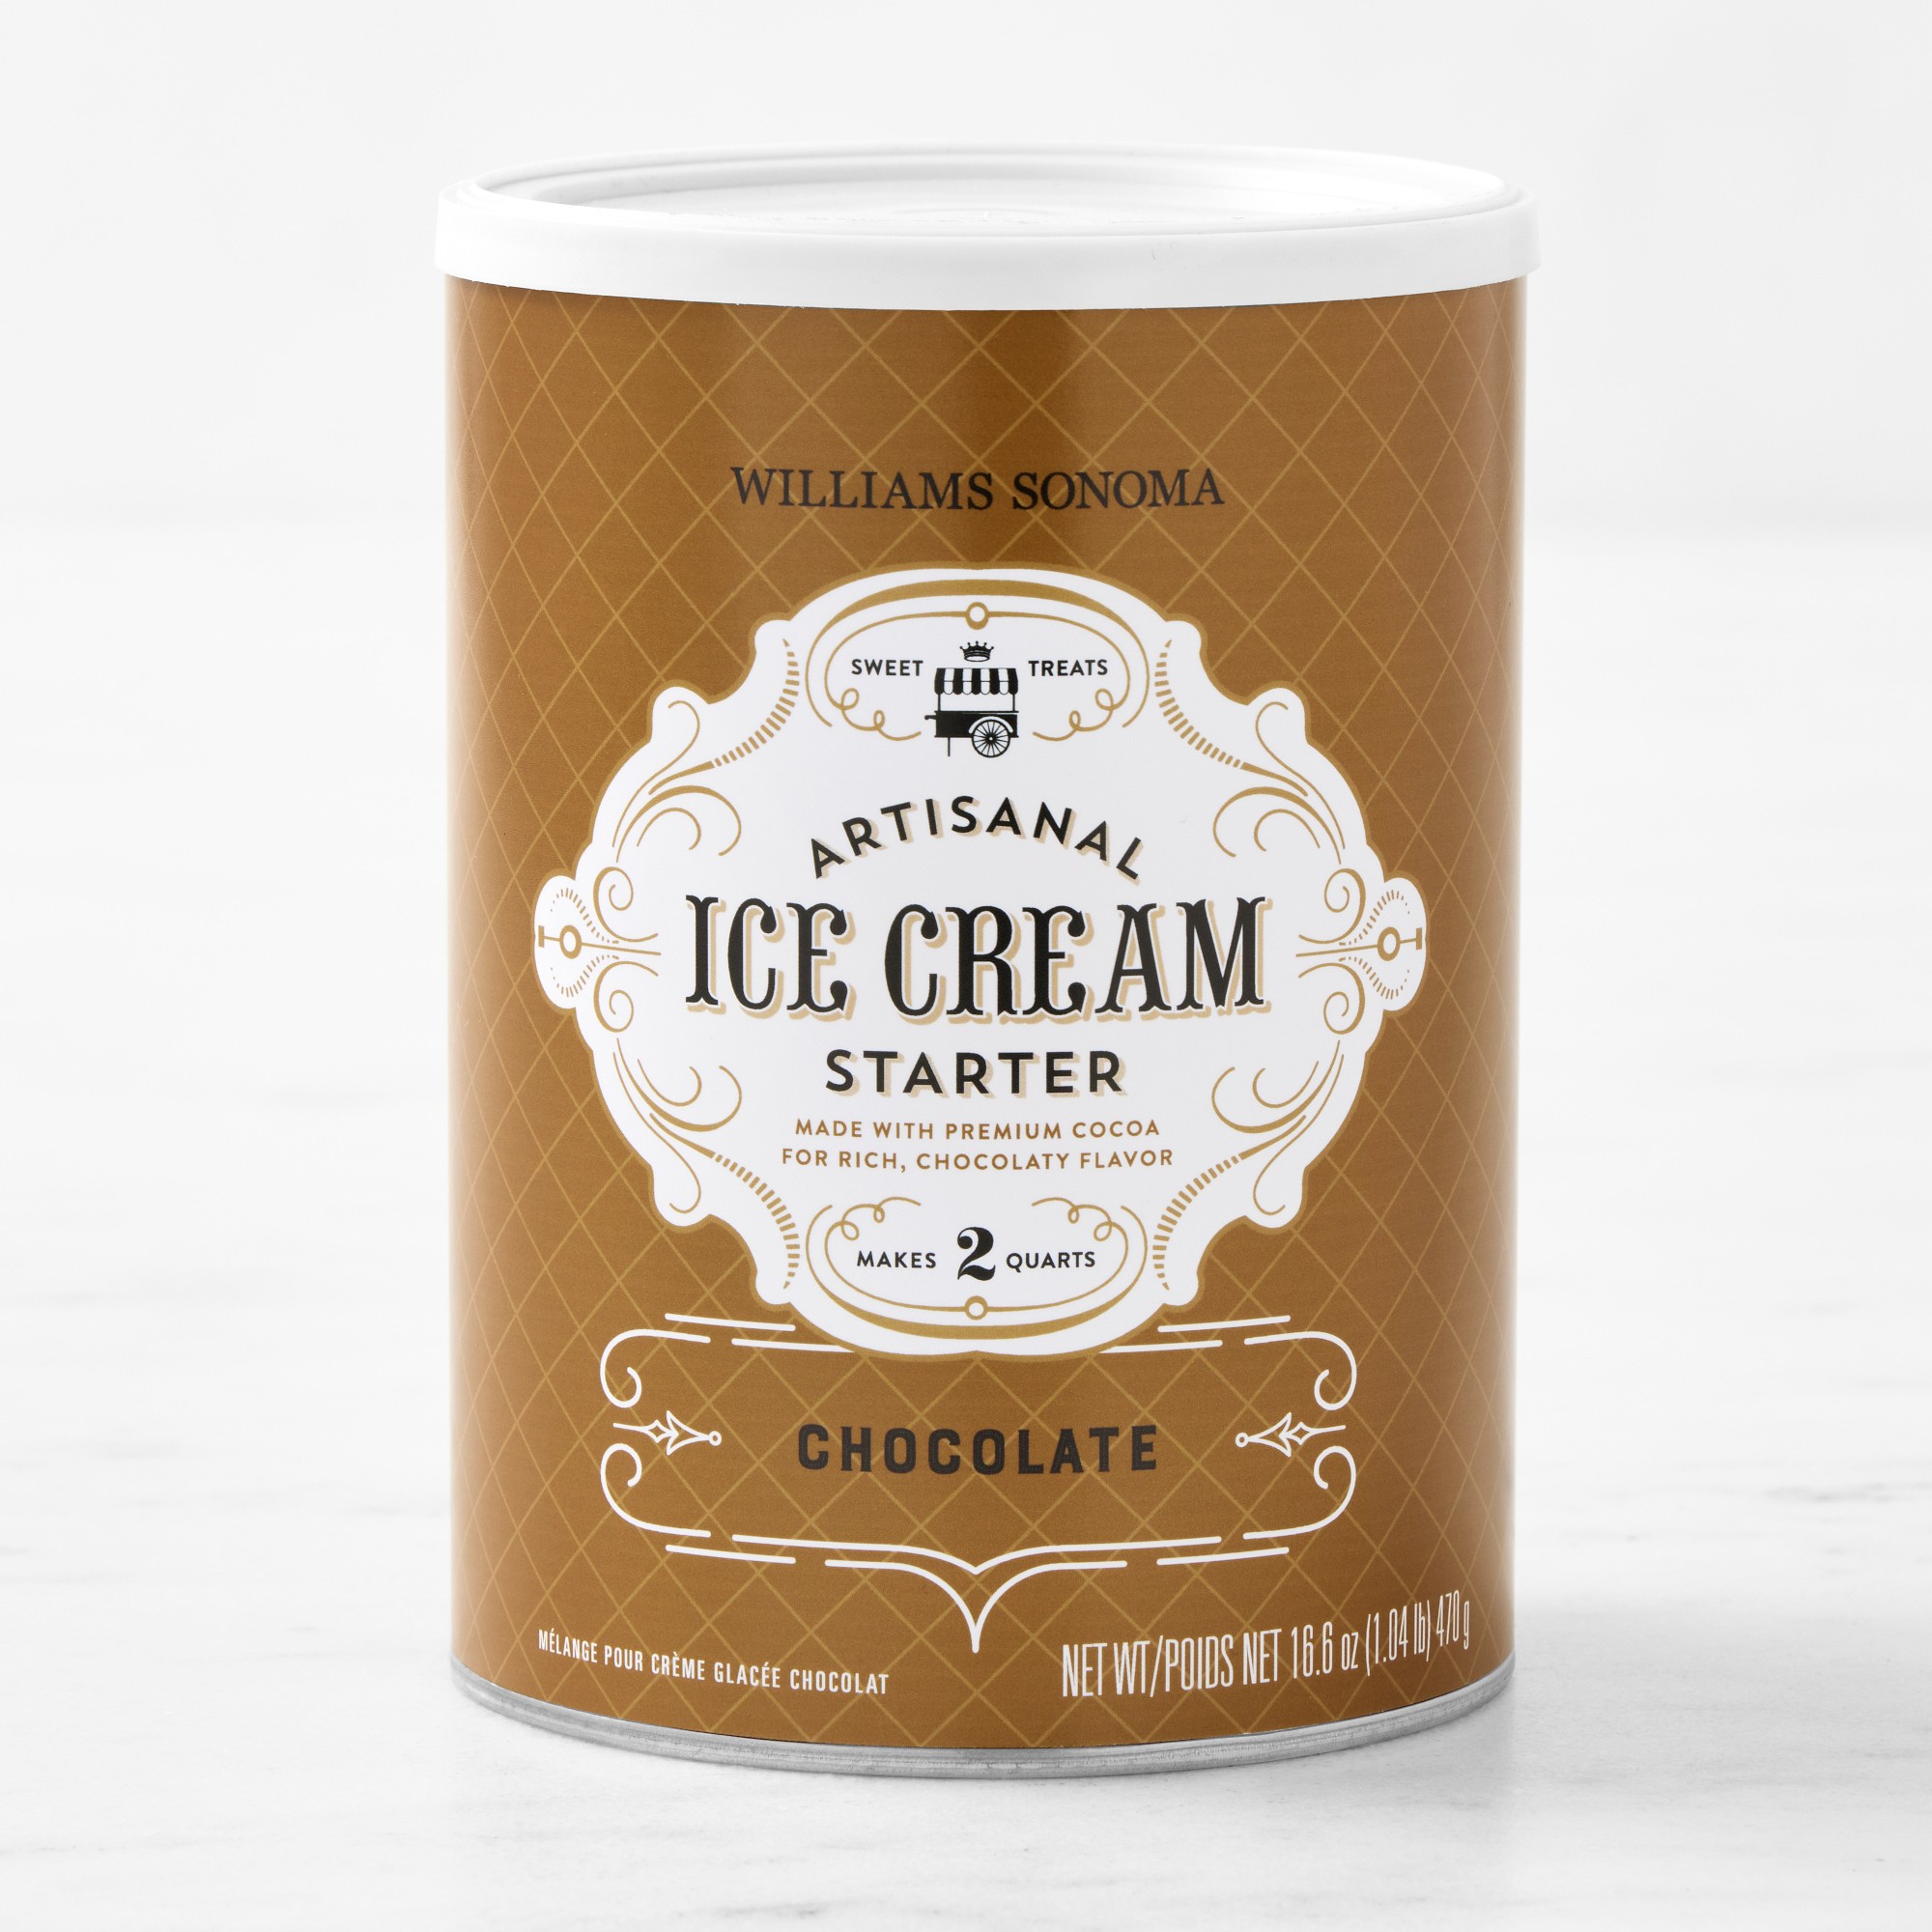 Williams Sonoma Ice Cream Starter